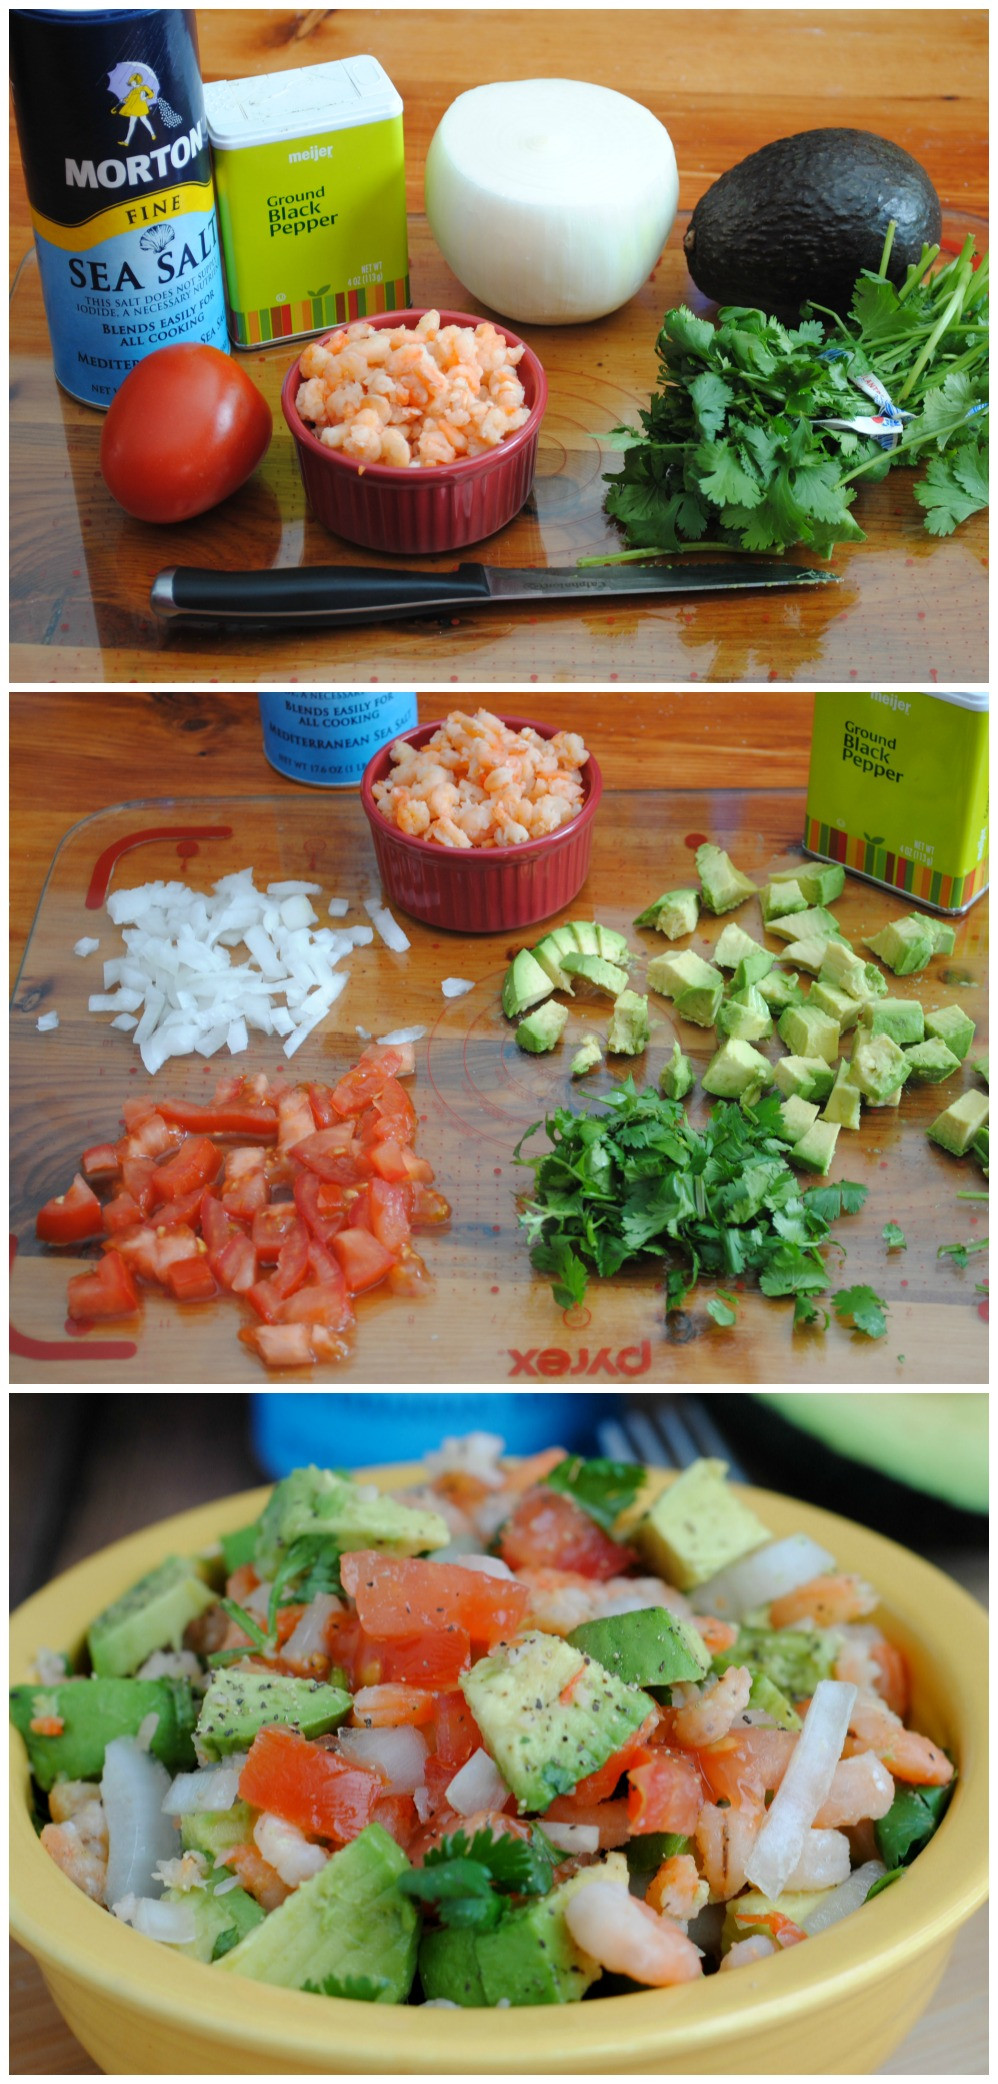 Easy Healthy Salads
 Quick & Healthy Recipe Avocado & Shrimp Salad